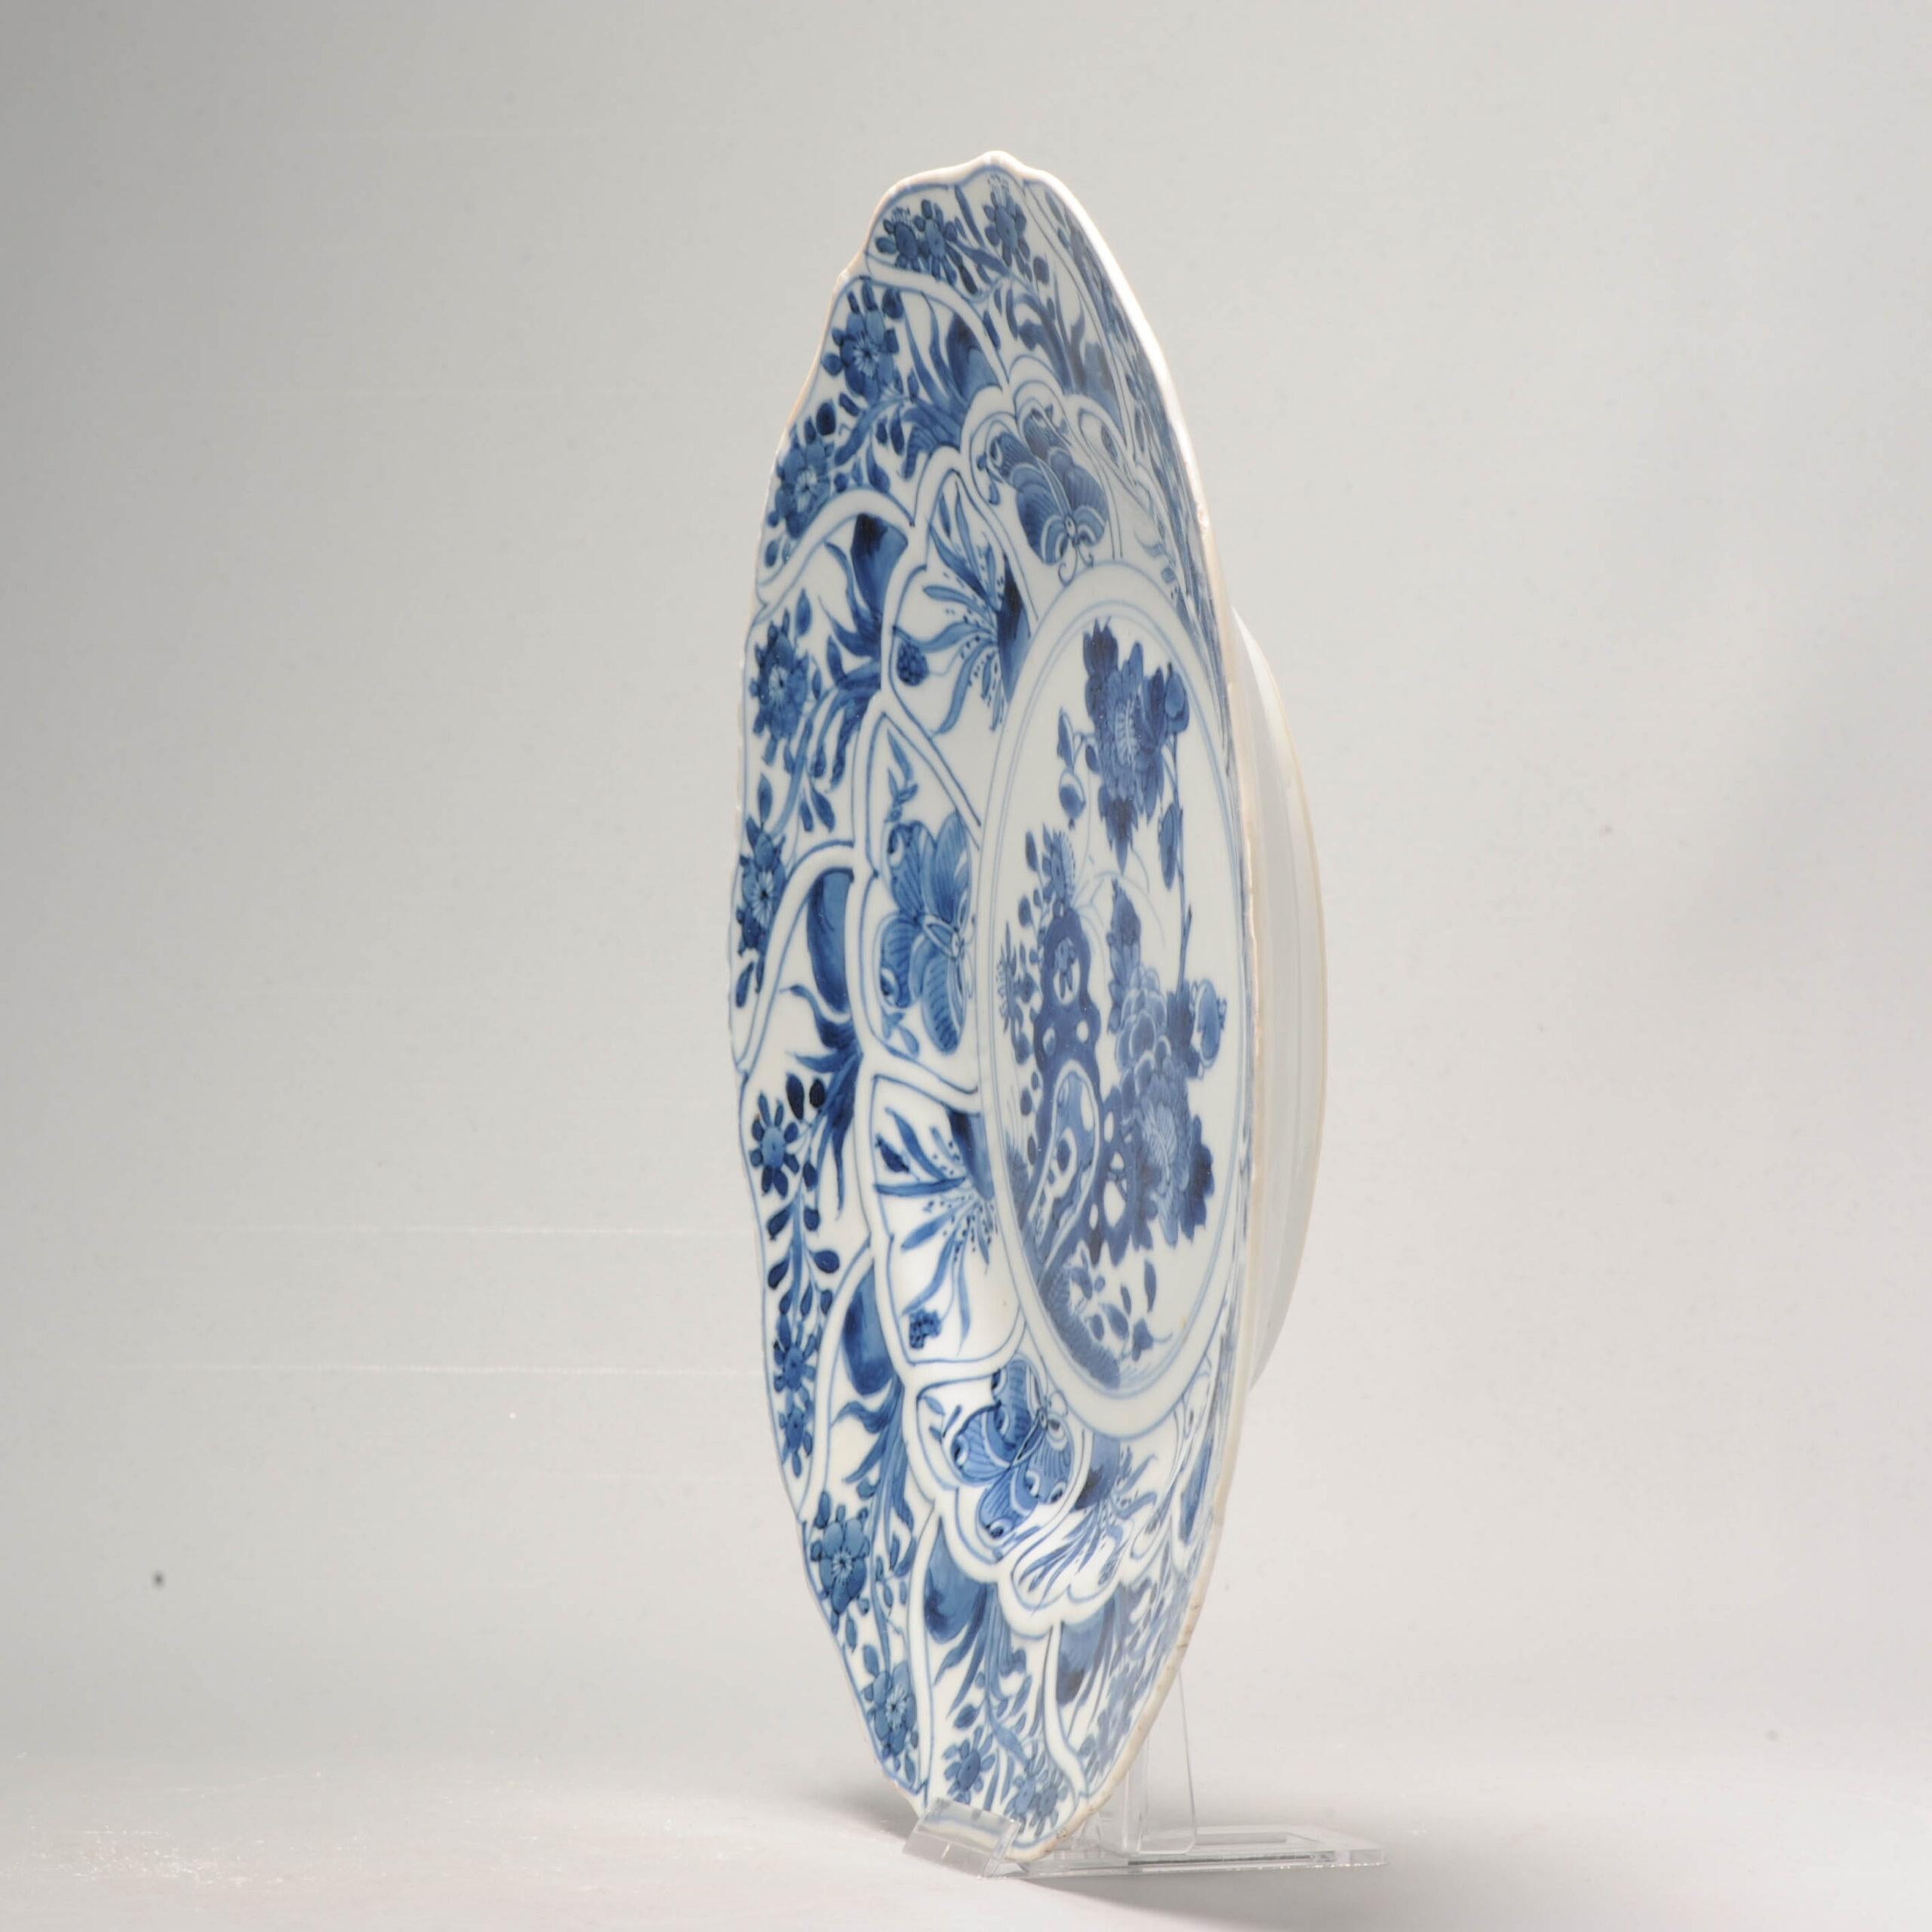 Up&Up est un superbe plat chinois bleu et blanc d'époque Kangxi, moulé en forme de fleur. Le plat présente une scène générale de rochers, de fleurs et de papillons, habilement peinte en bleu cobalt foncé.

Ce plat ancien est une véritable œuvre